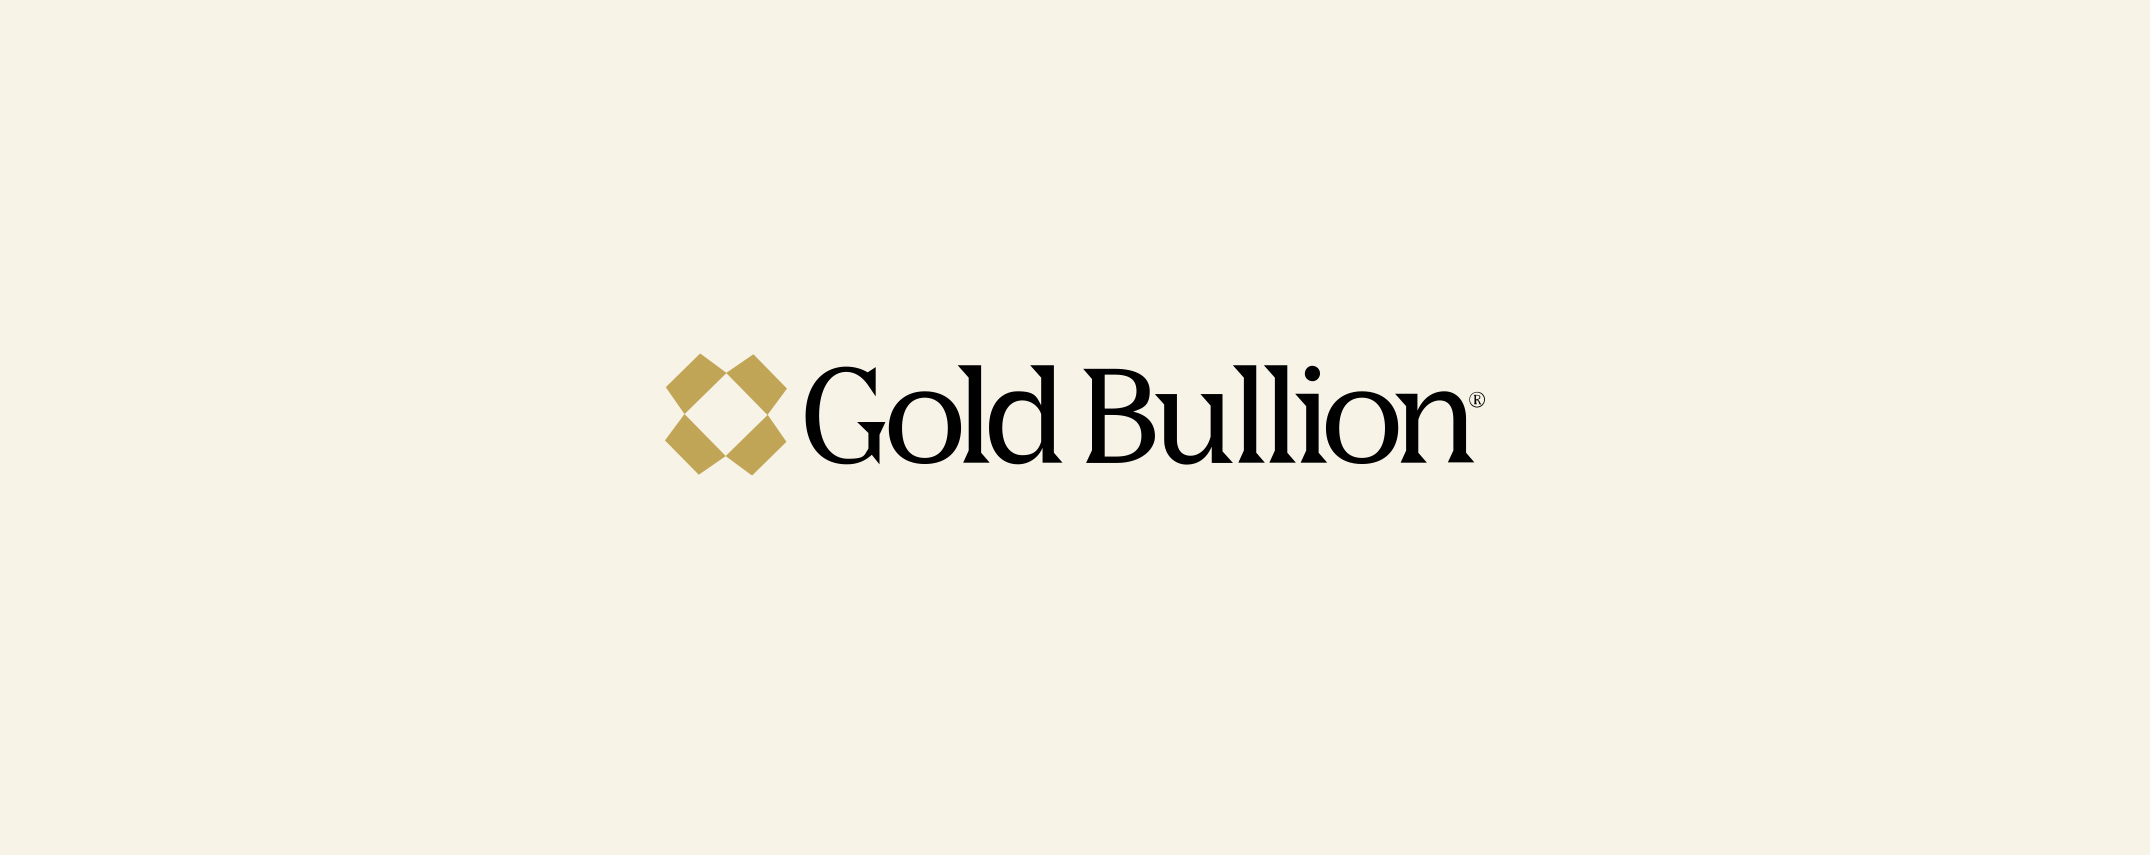 Preview of Gold Bullion logo